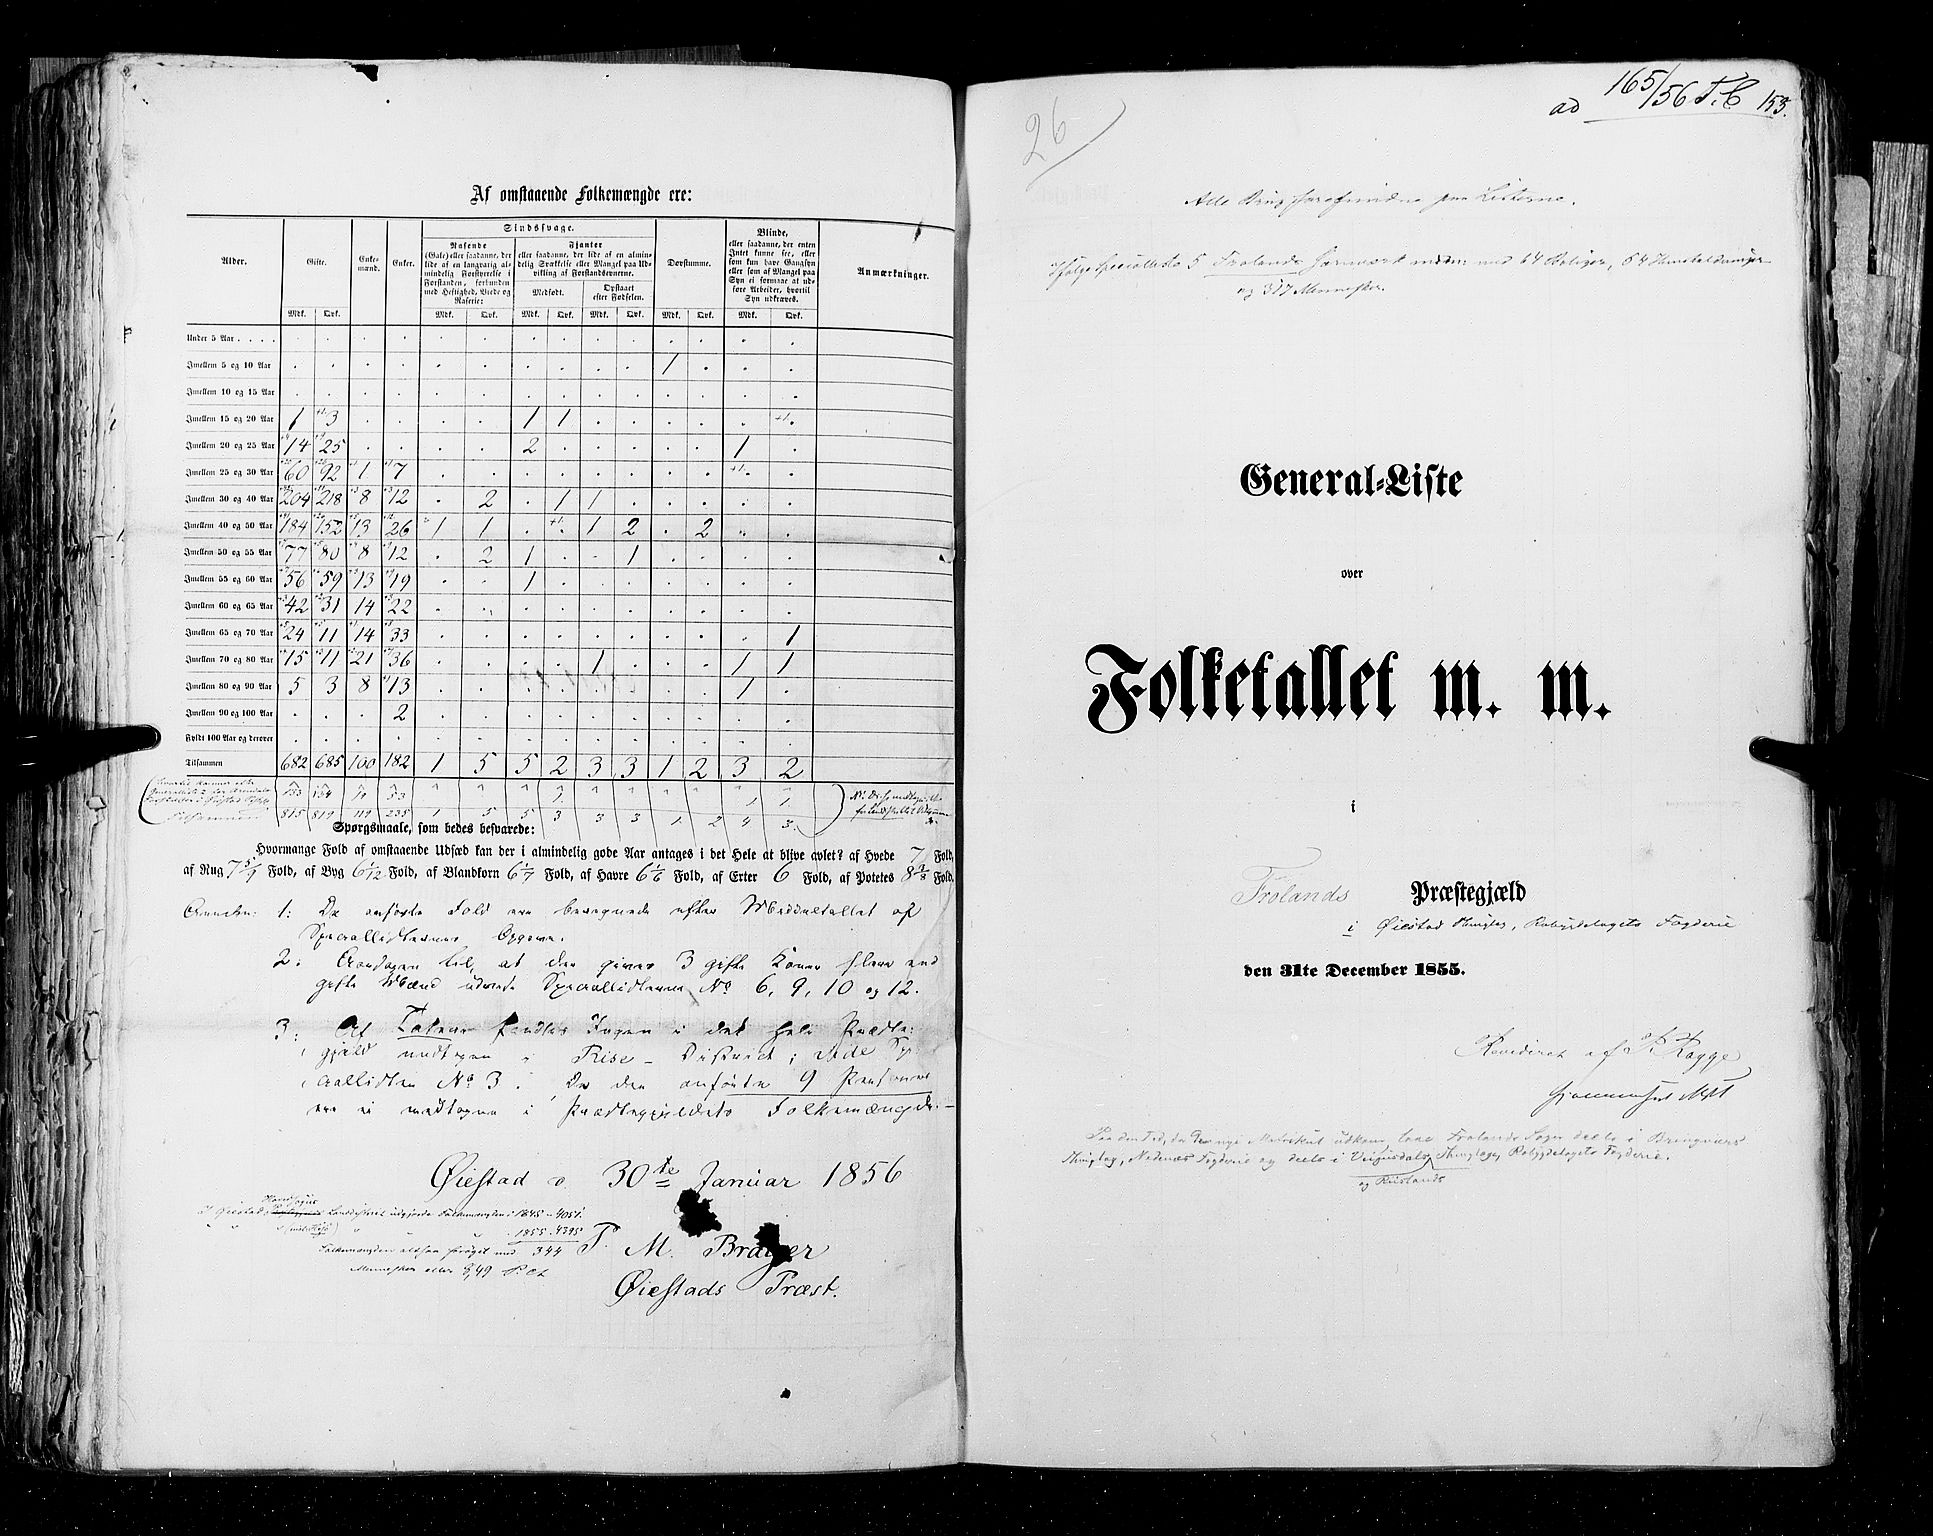 RA, Census 1855, vol. 3: Bratsberg amt, Nedenes amt og Lister og Mandal amt, 1855, p. 153